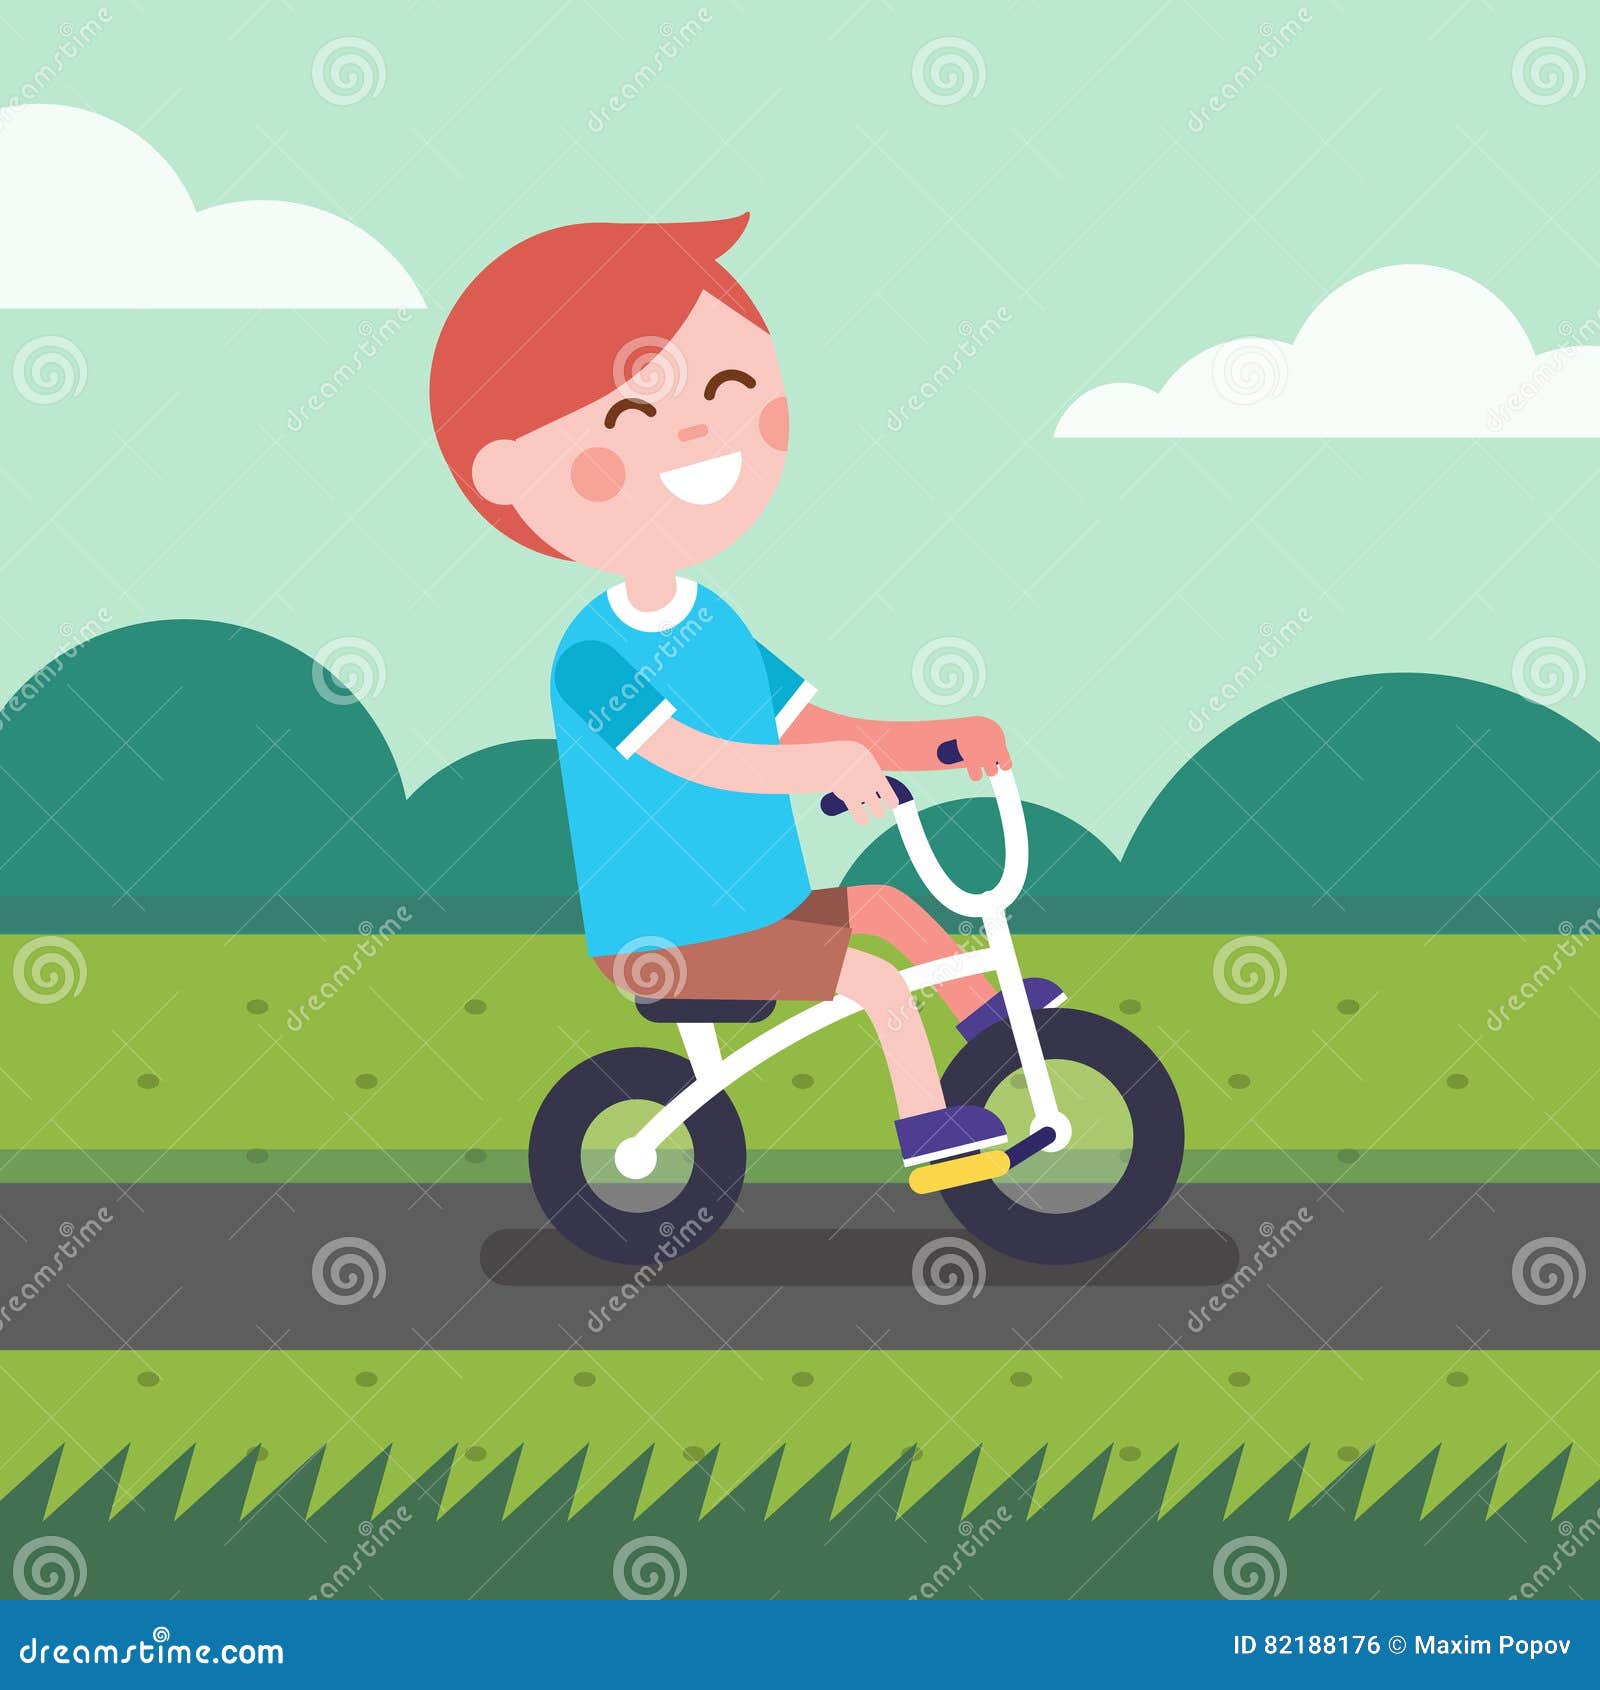 Ребенок велосипедная дорожка. Мальчик на велосипеде. Мальчик катается на велосипеде. Кататься детям на дорожках велосипед. Мальчик на велосипеде на дороге.